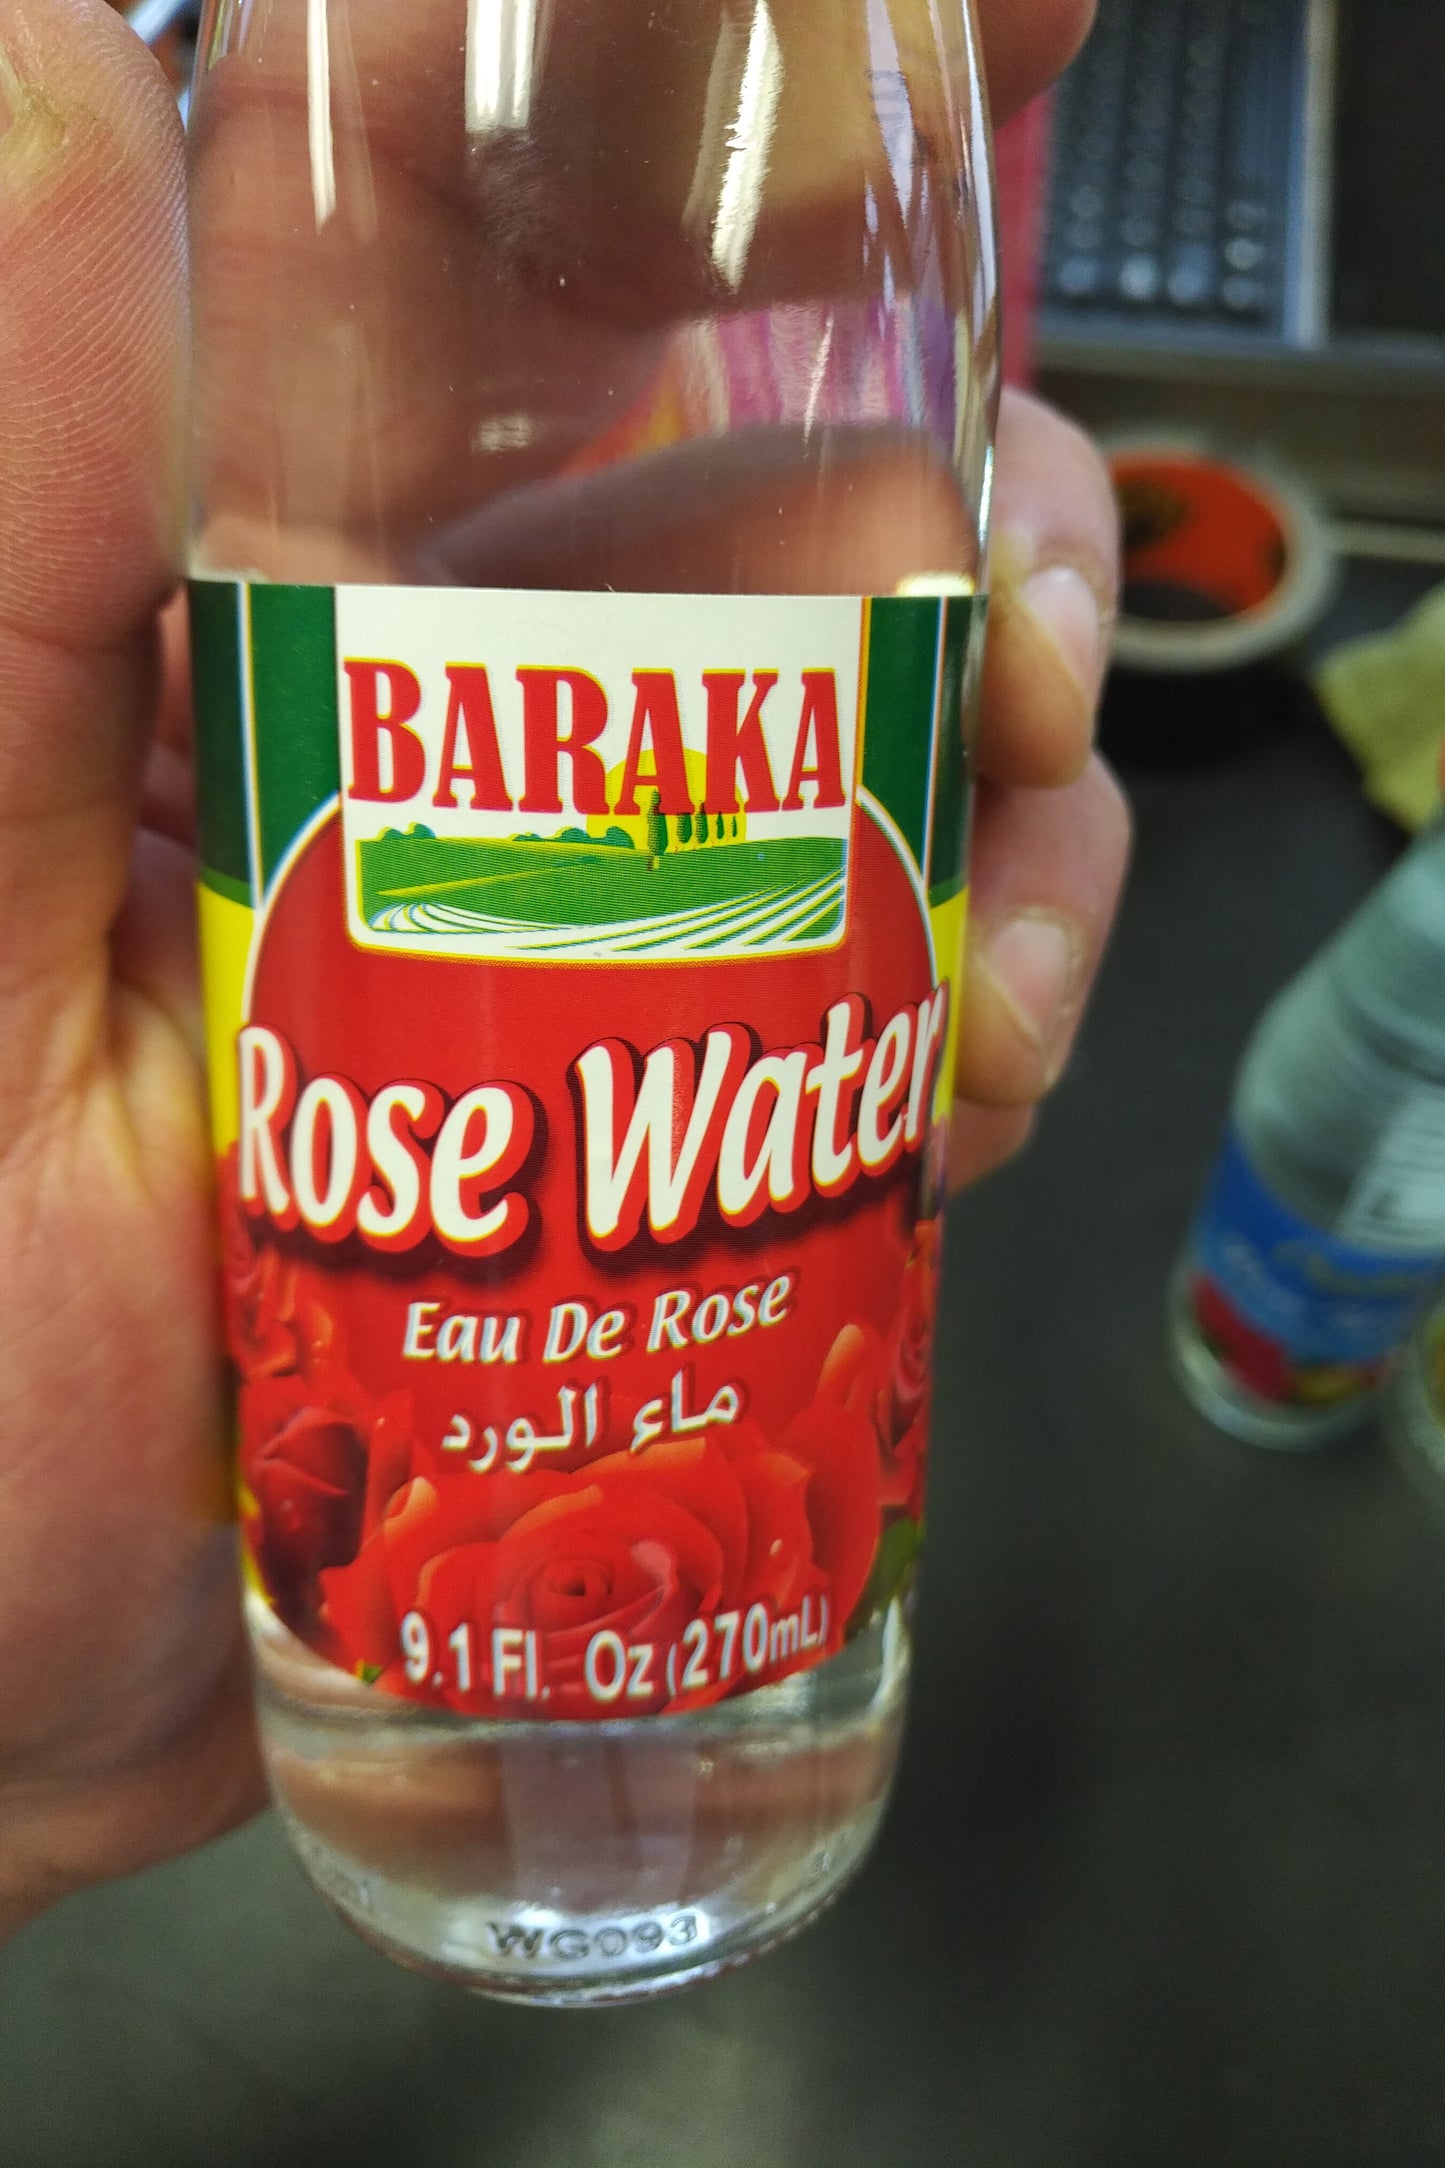 Baraka Rose Water 9.1 oz